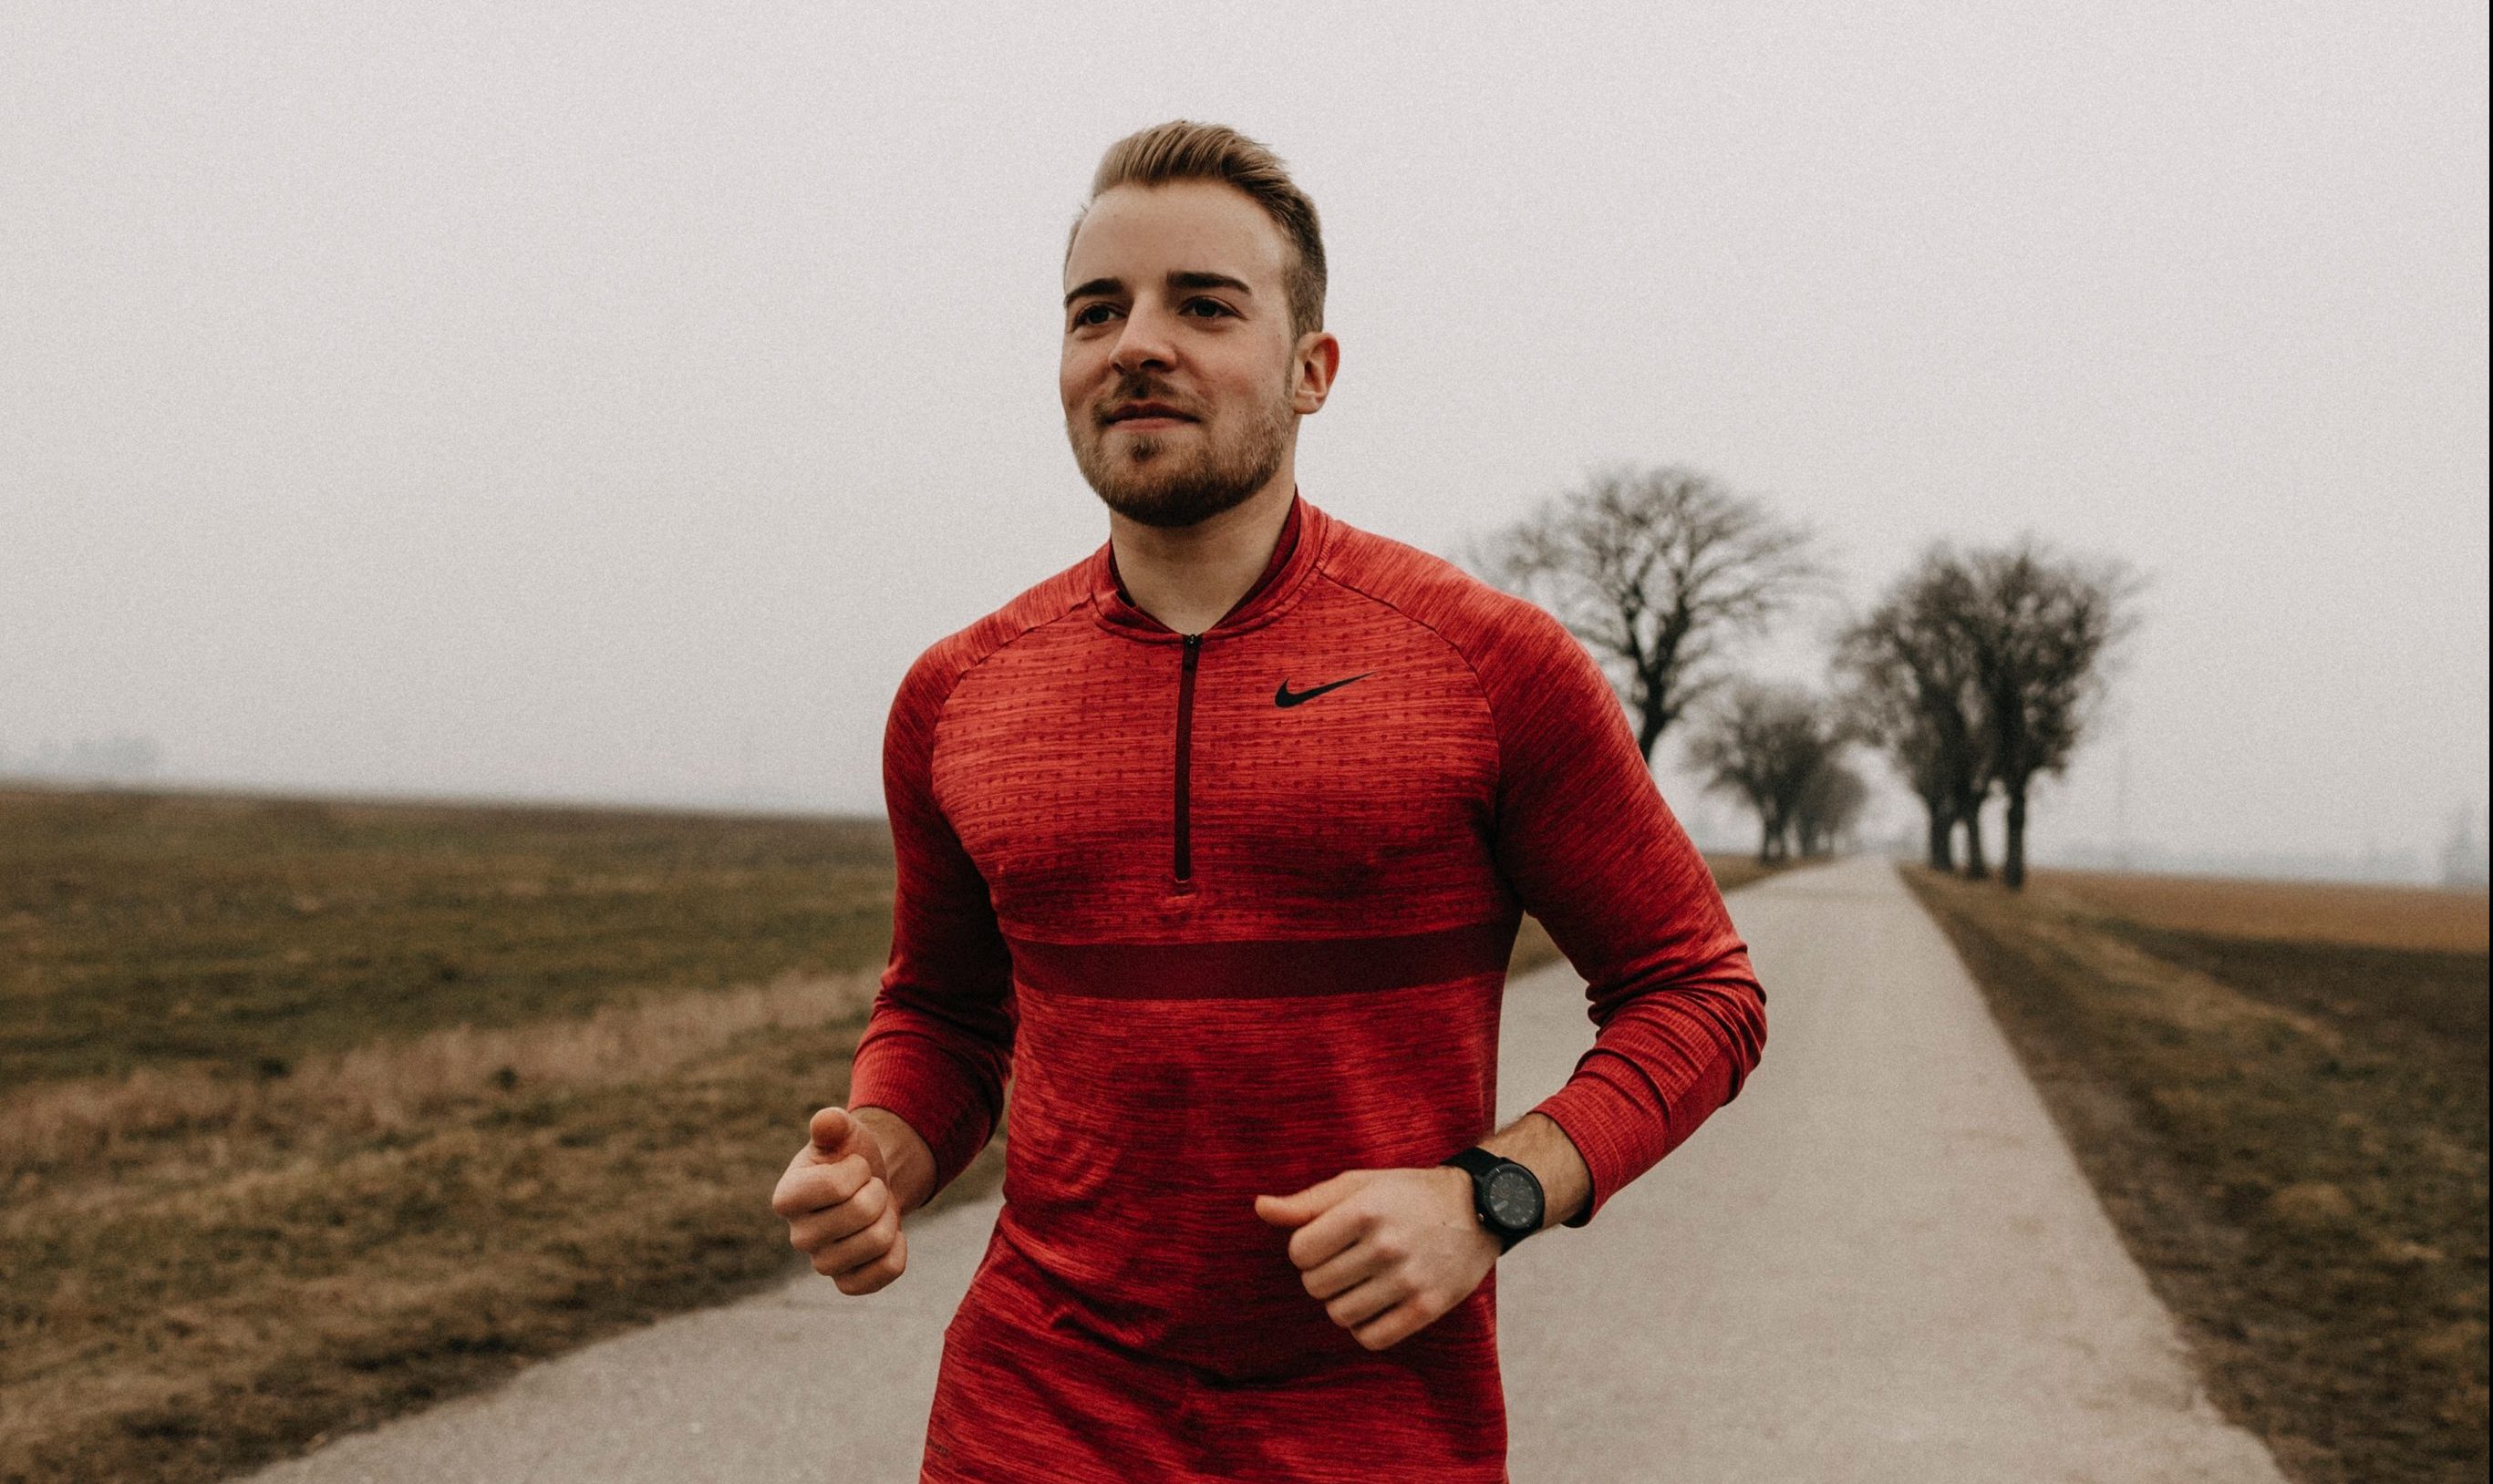 Laufen für die psychische Gesundheit - Lukas Pölzer